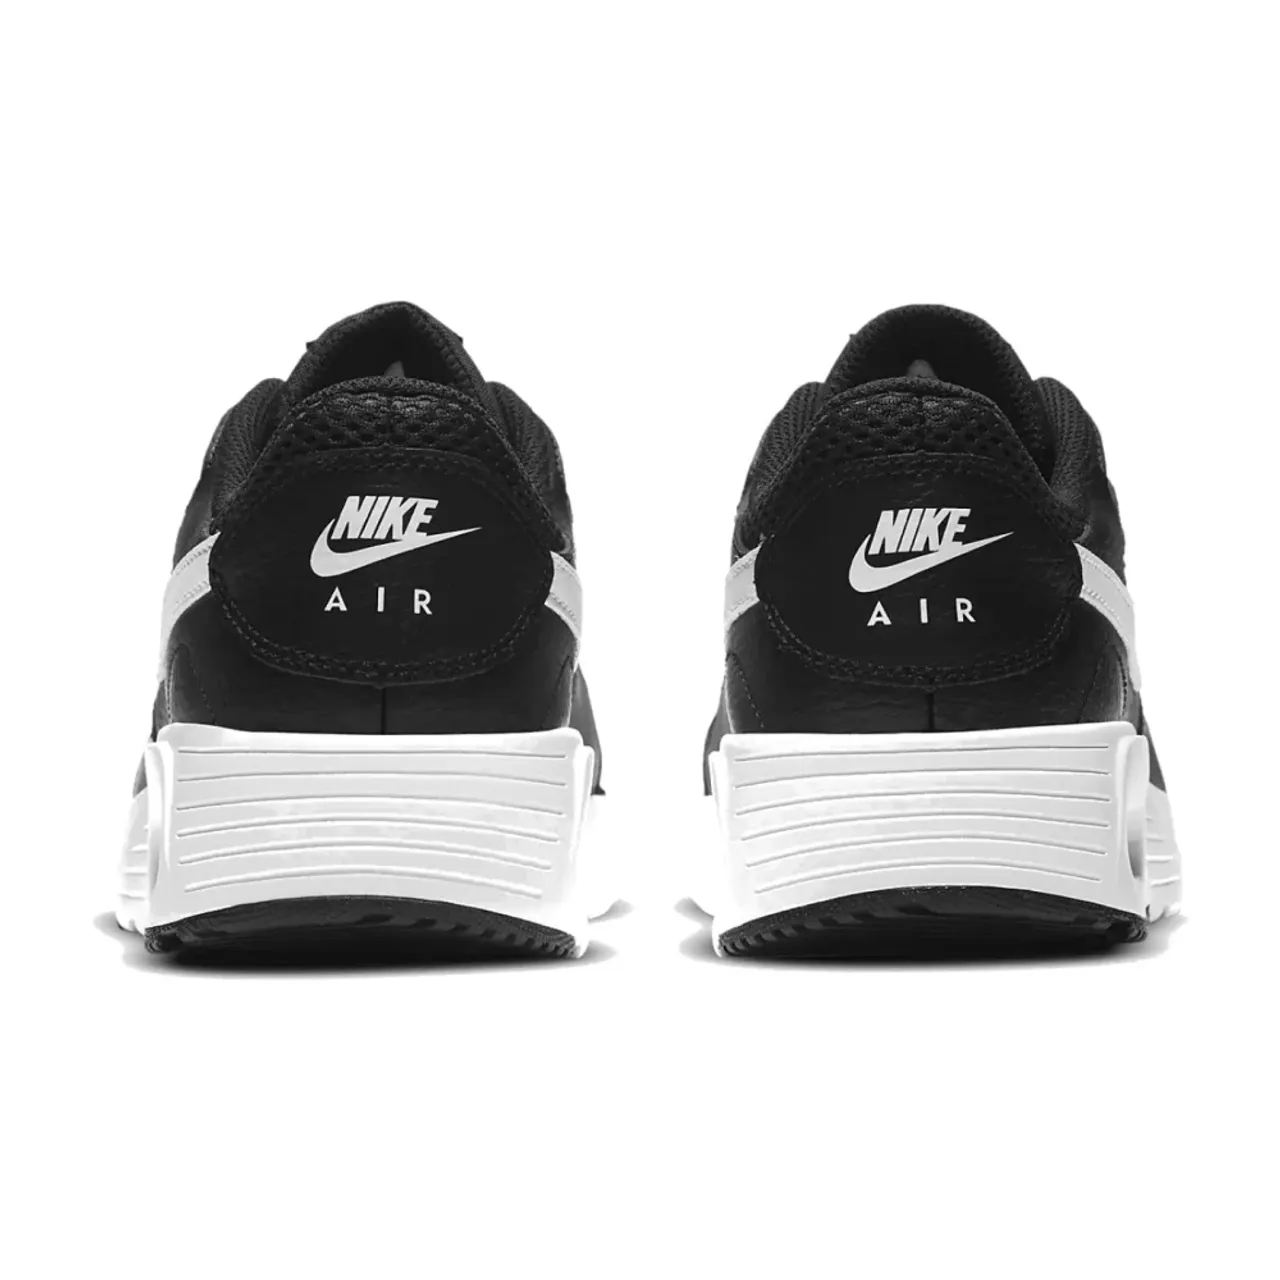 PU-Leder Air Max Sneaker Nike